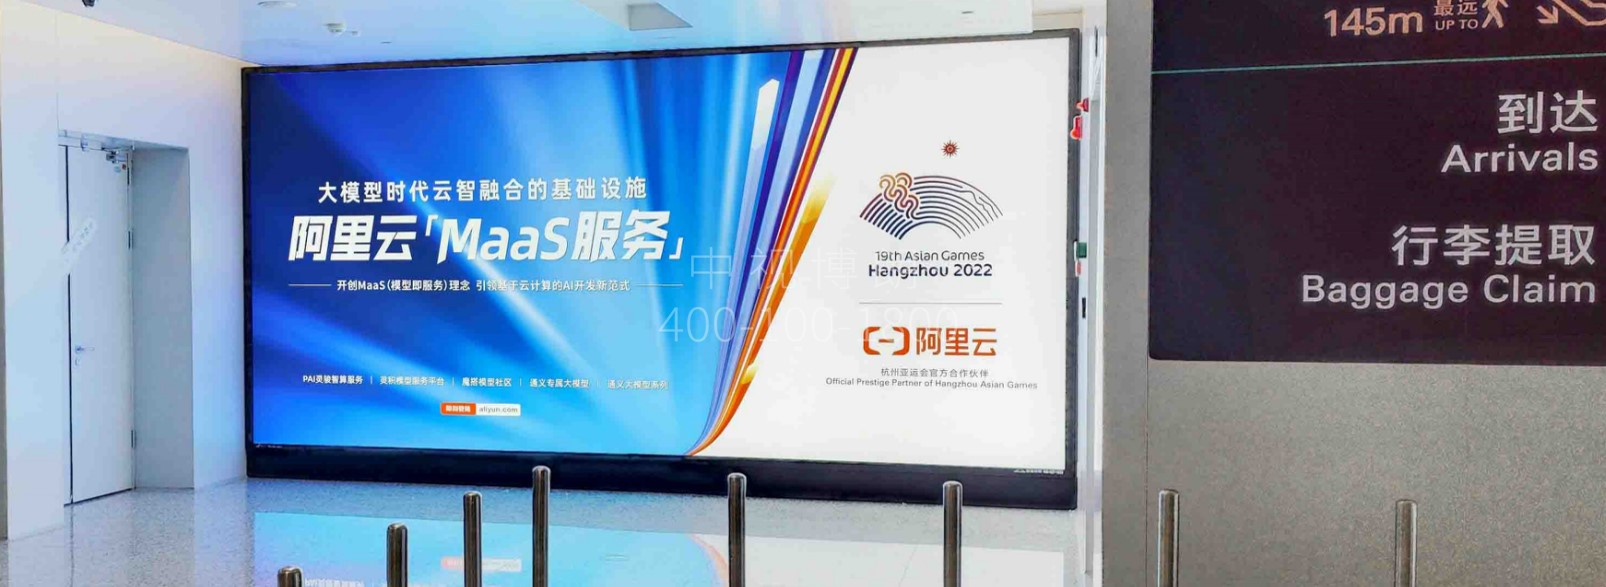 杭州萧山机场广告-T4国际到达免税区灯箱LB01